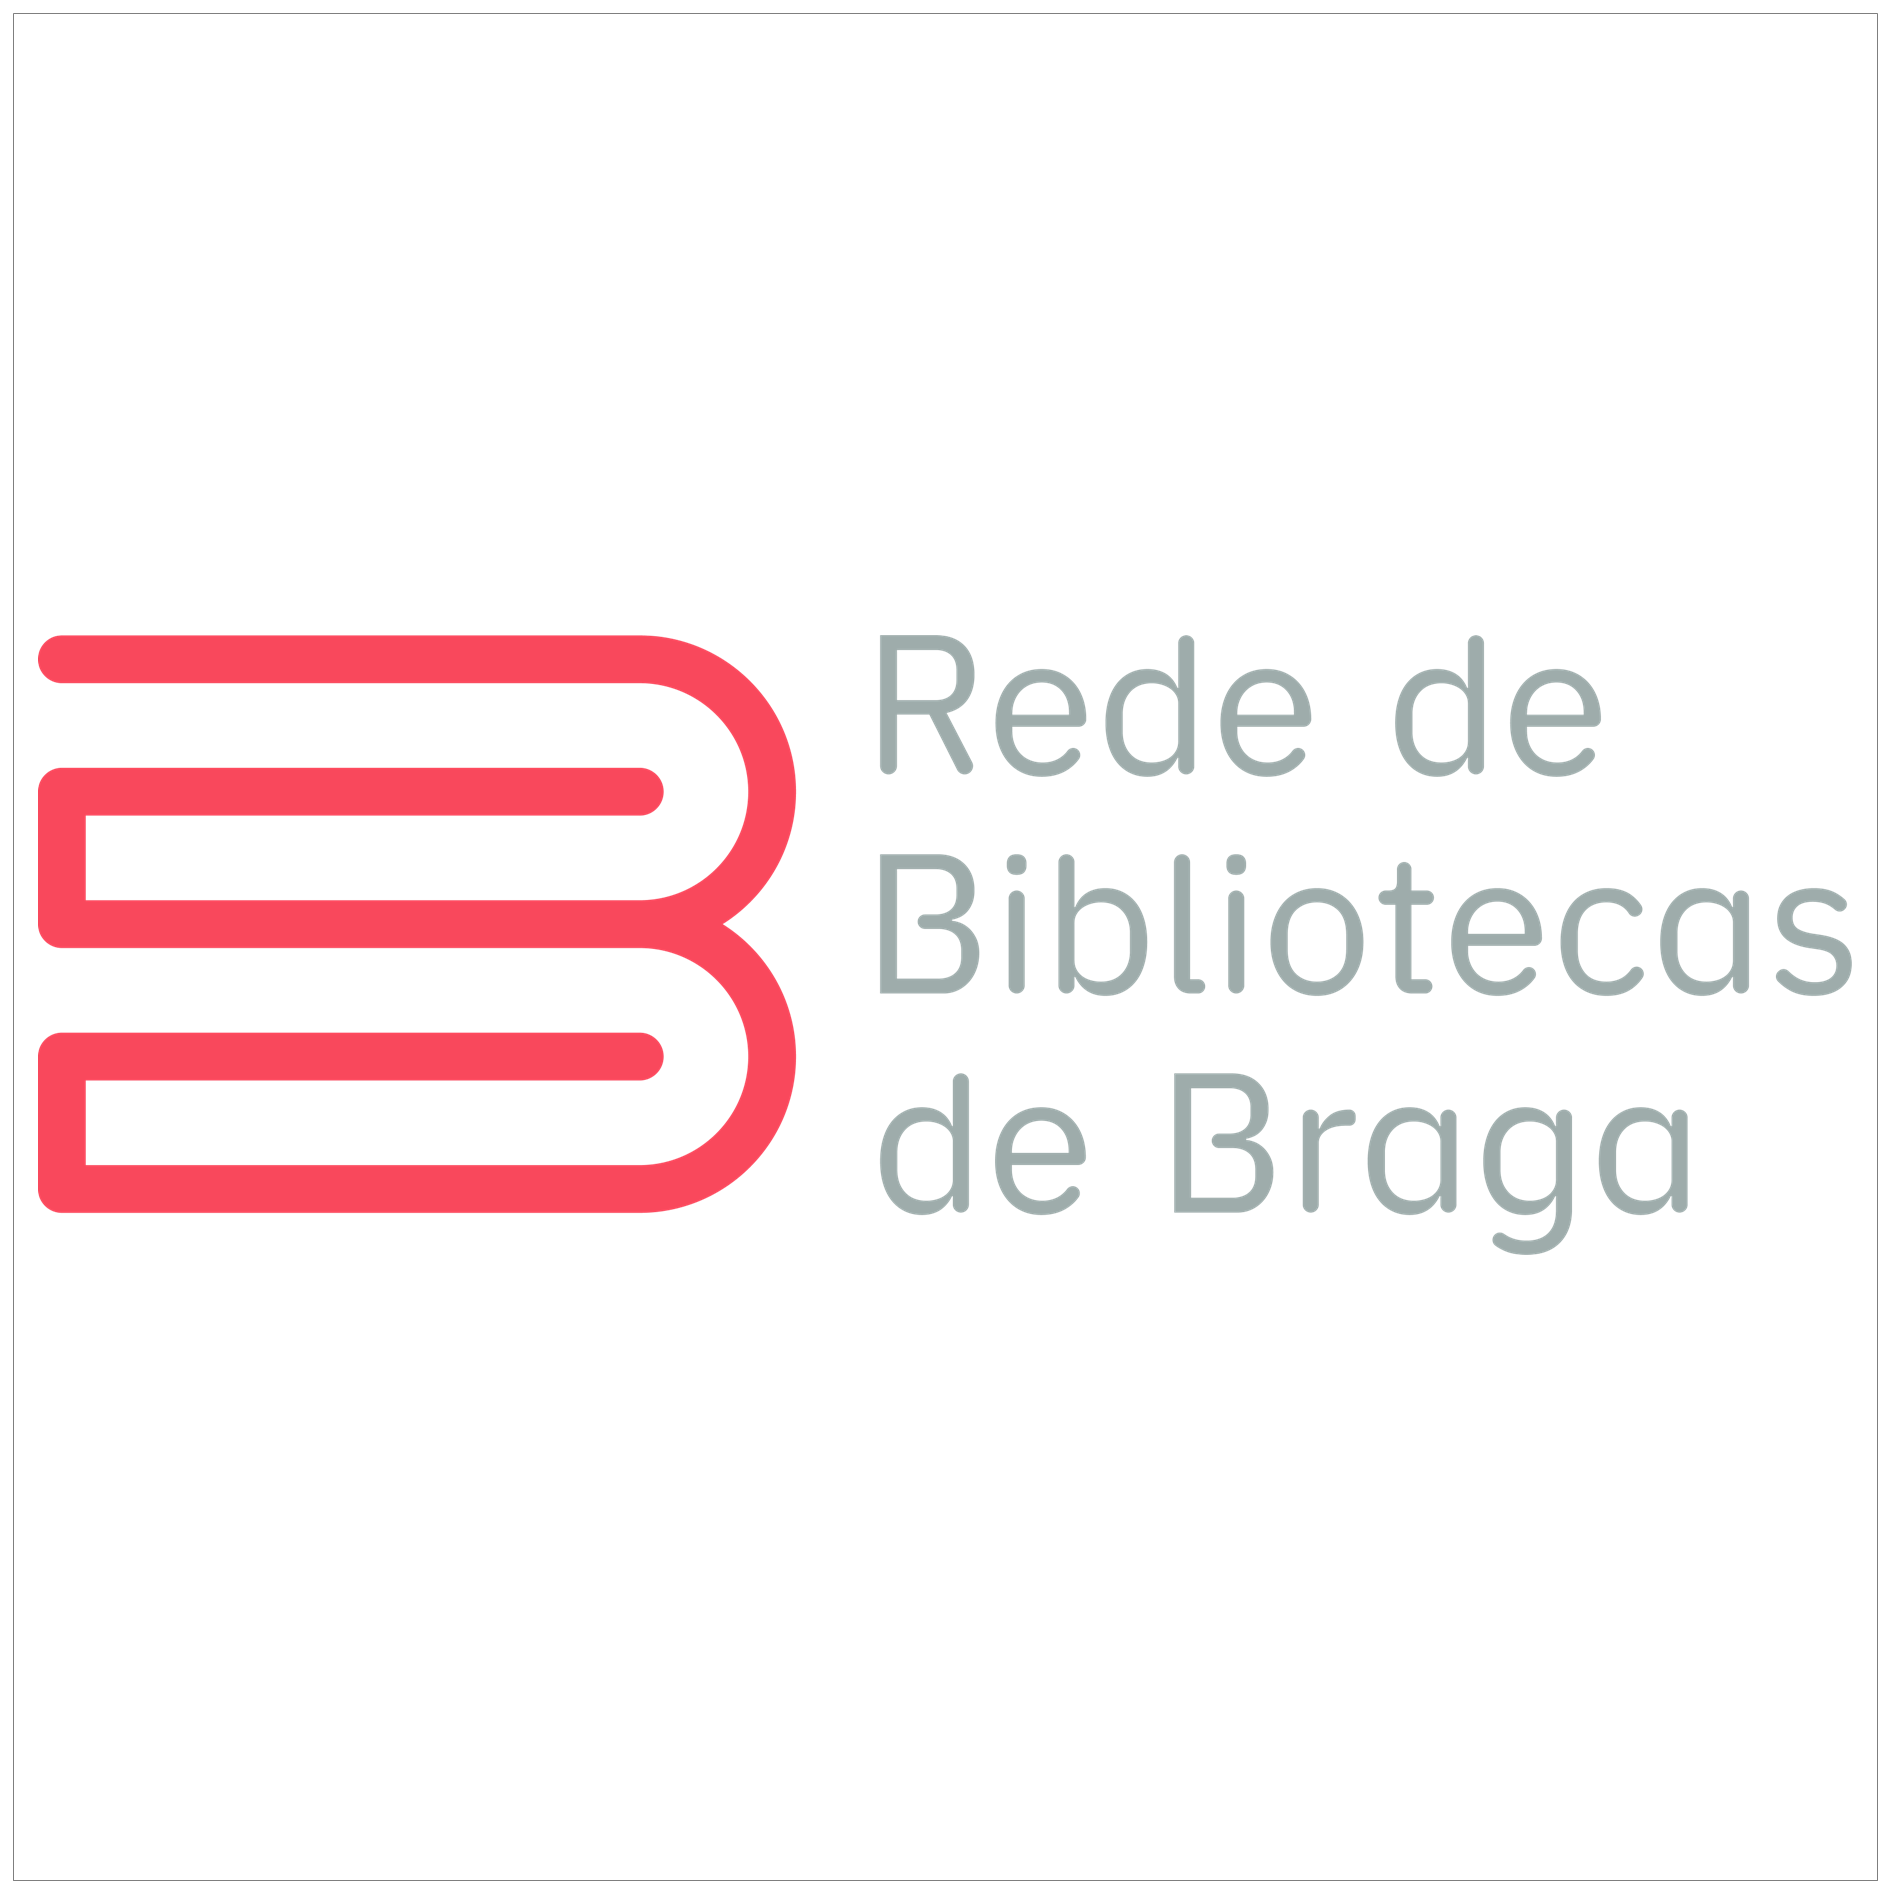 Rede_Bibliotecas_de_Braga_3.png>